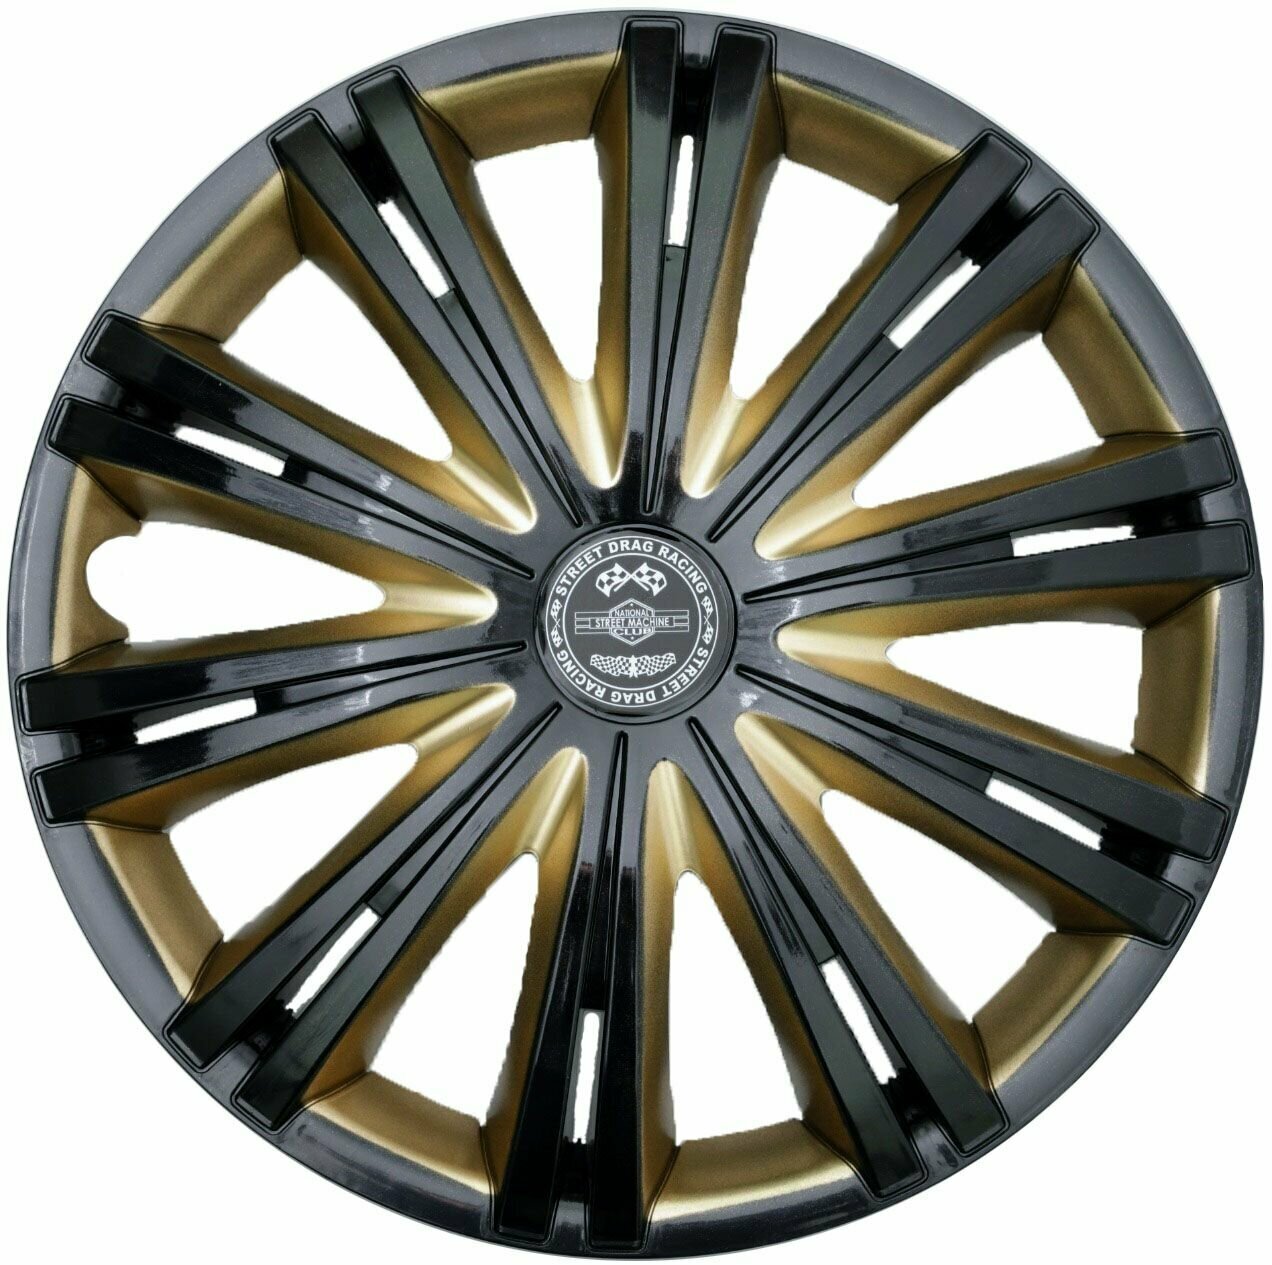 Колпаки на колеса STAR гига голд SB R15 комплект 4шт на диски радиус 15 легковой авто цвет серый черный желтый.